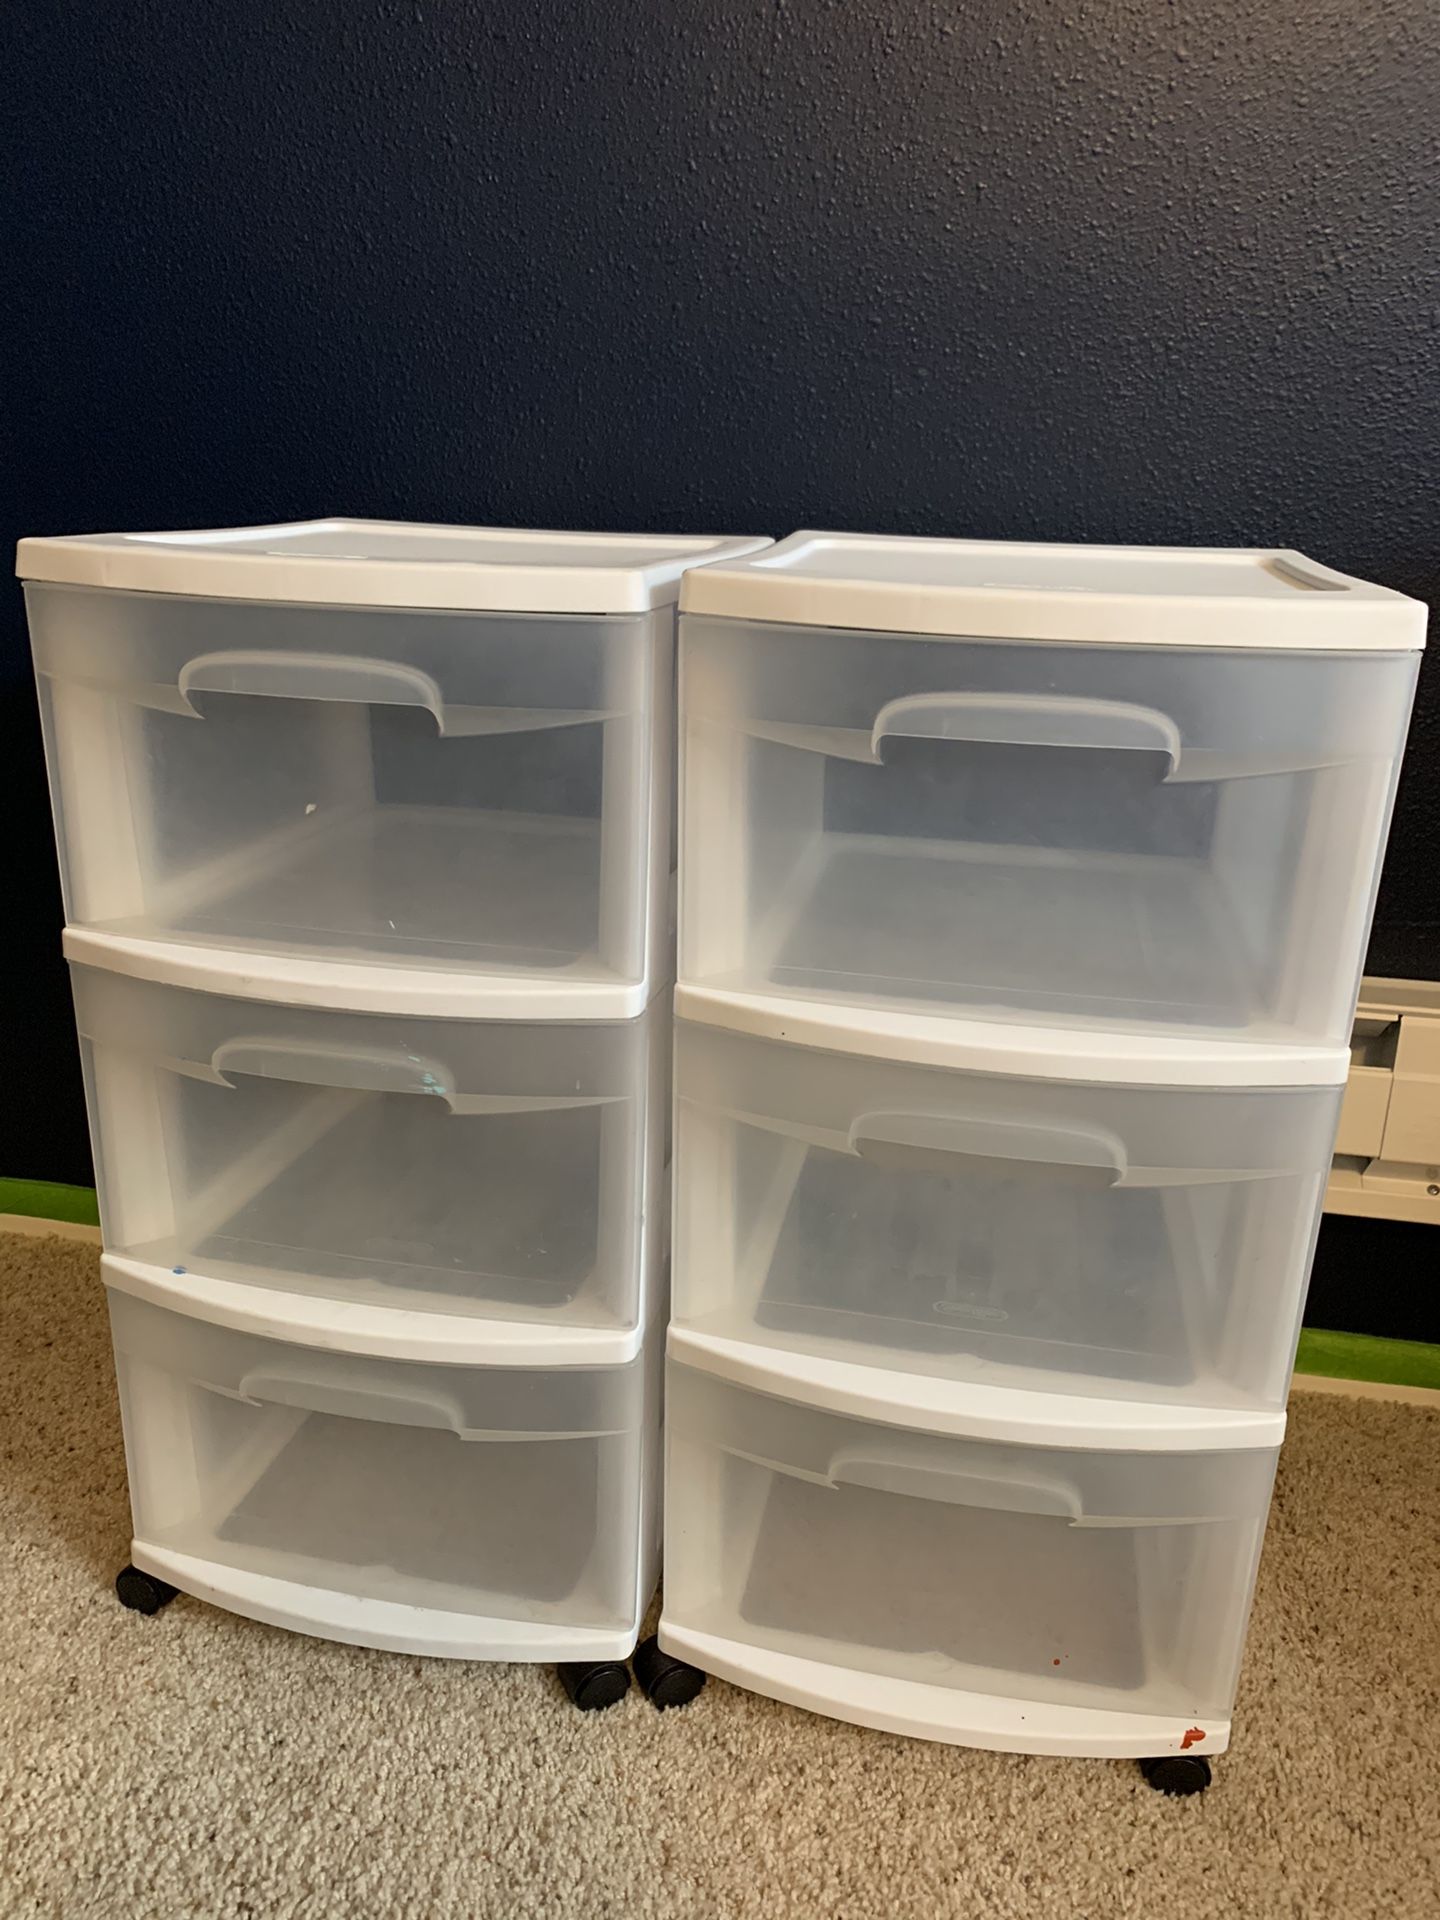 Plastic drawers Storage Organizers white